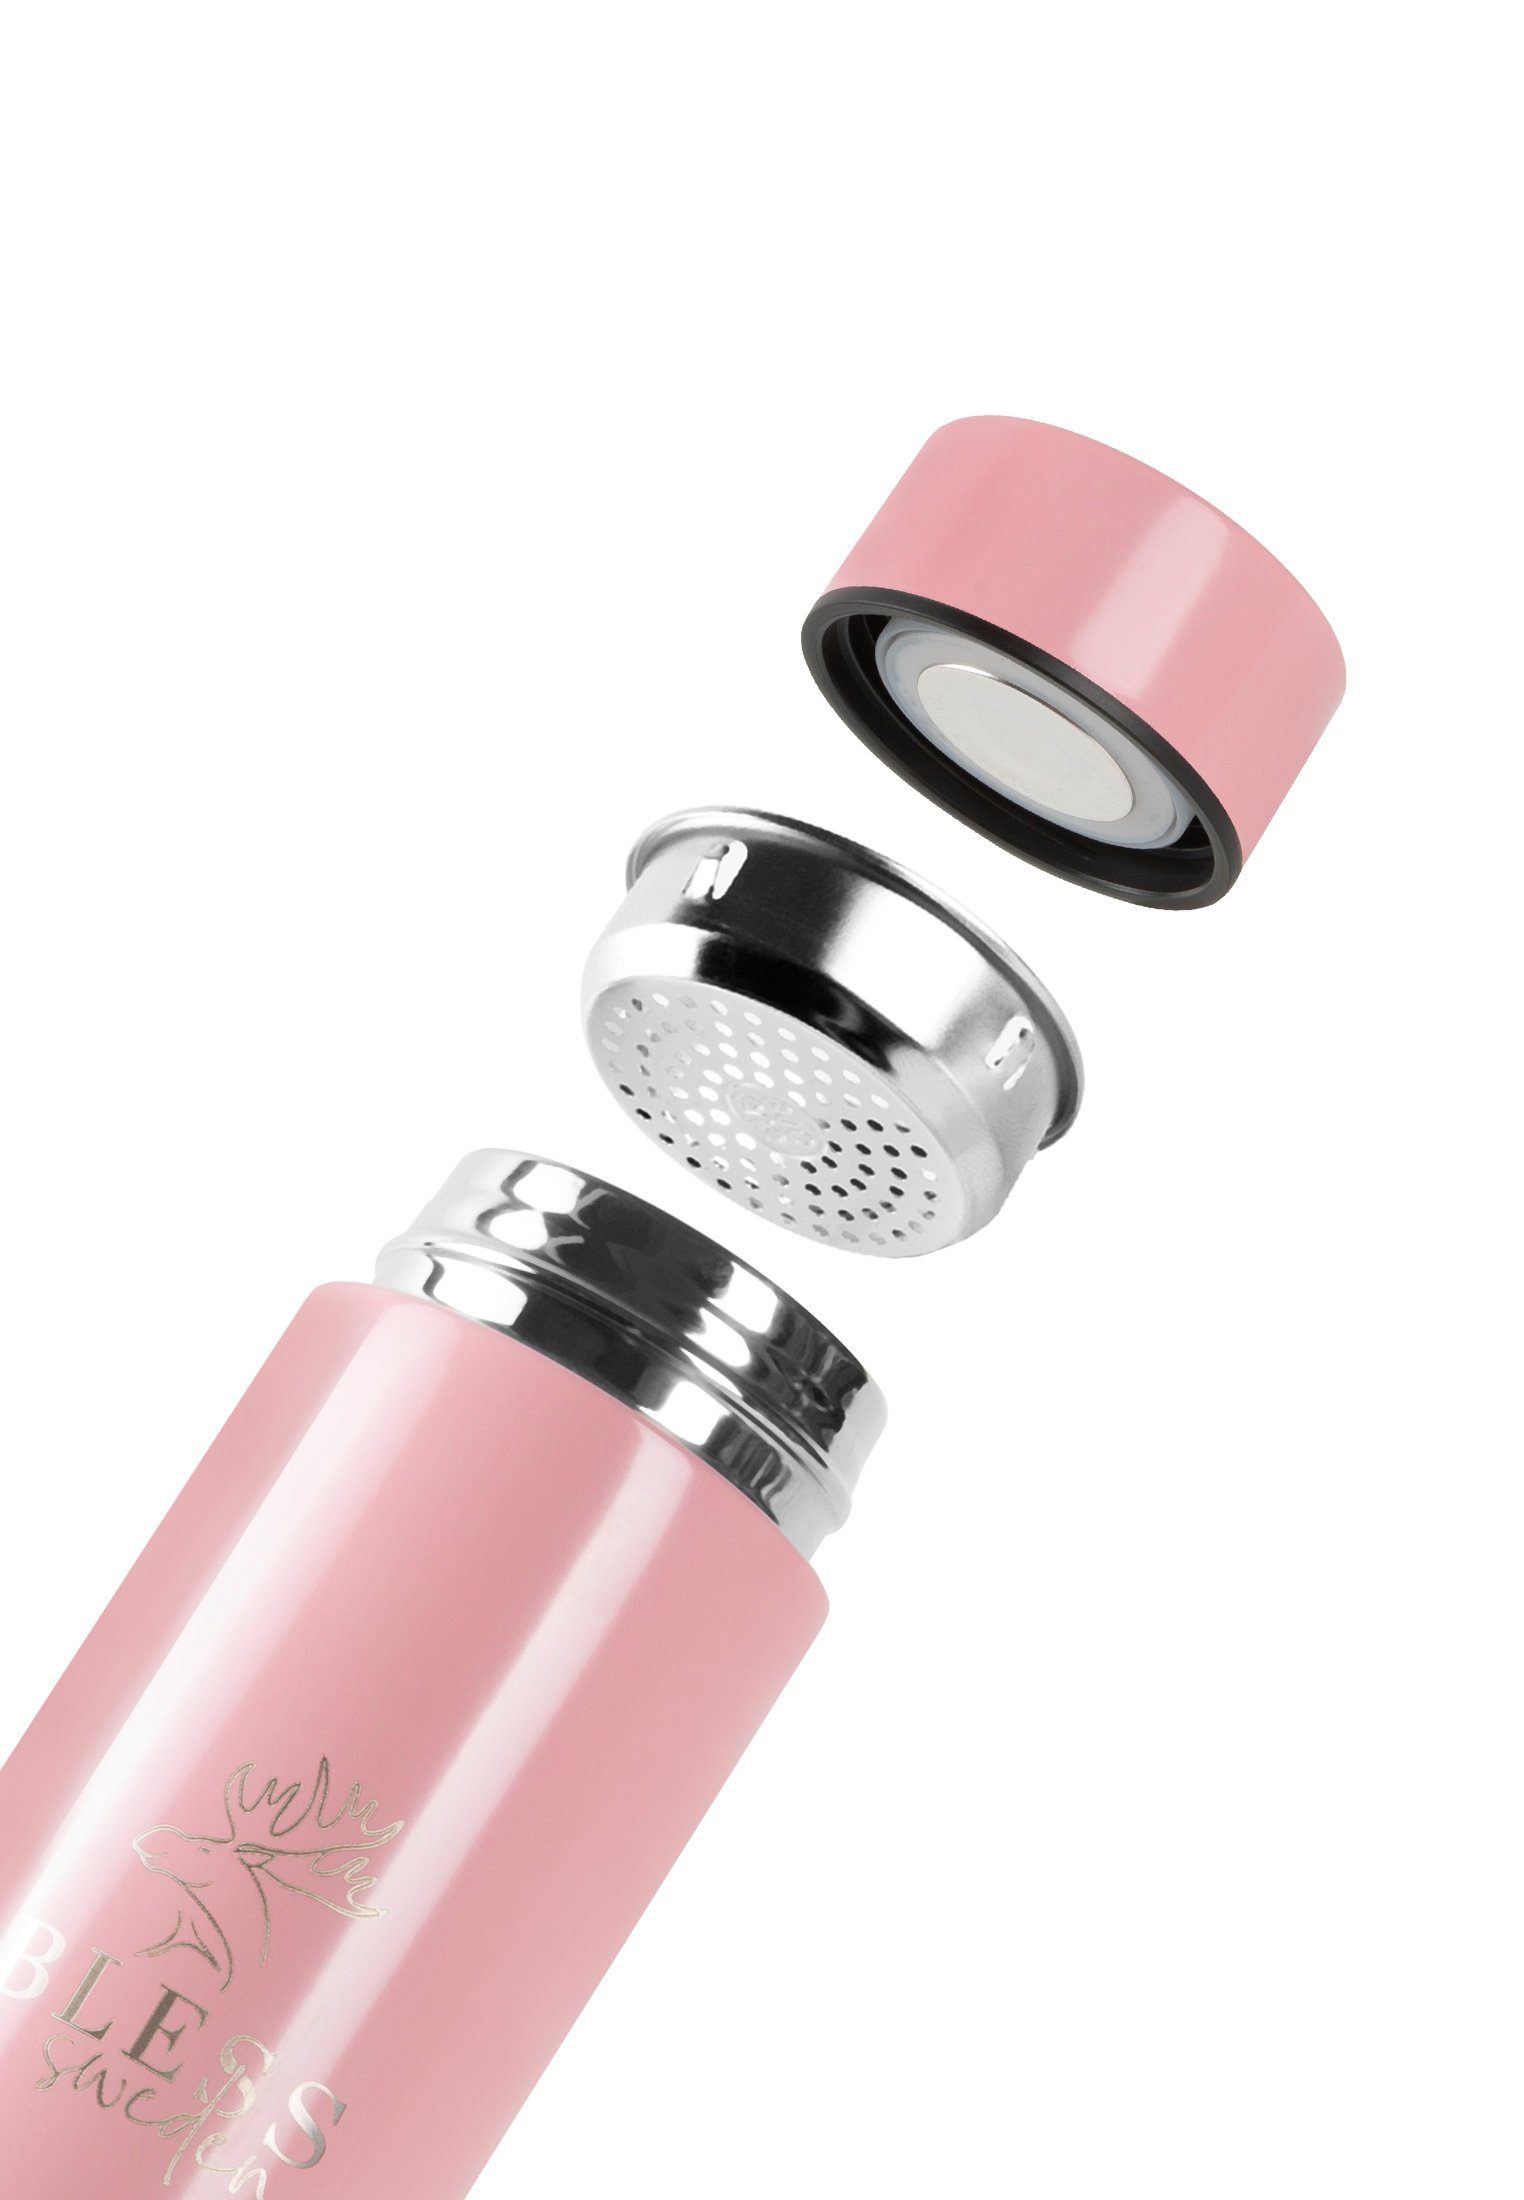 BLESS Sweden Trinkflasche Smart Bottle ml Trinkflasche 500 Pink LED-Temperaturanzeige